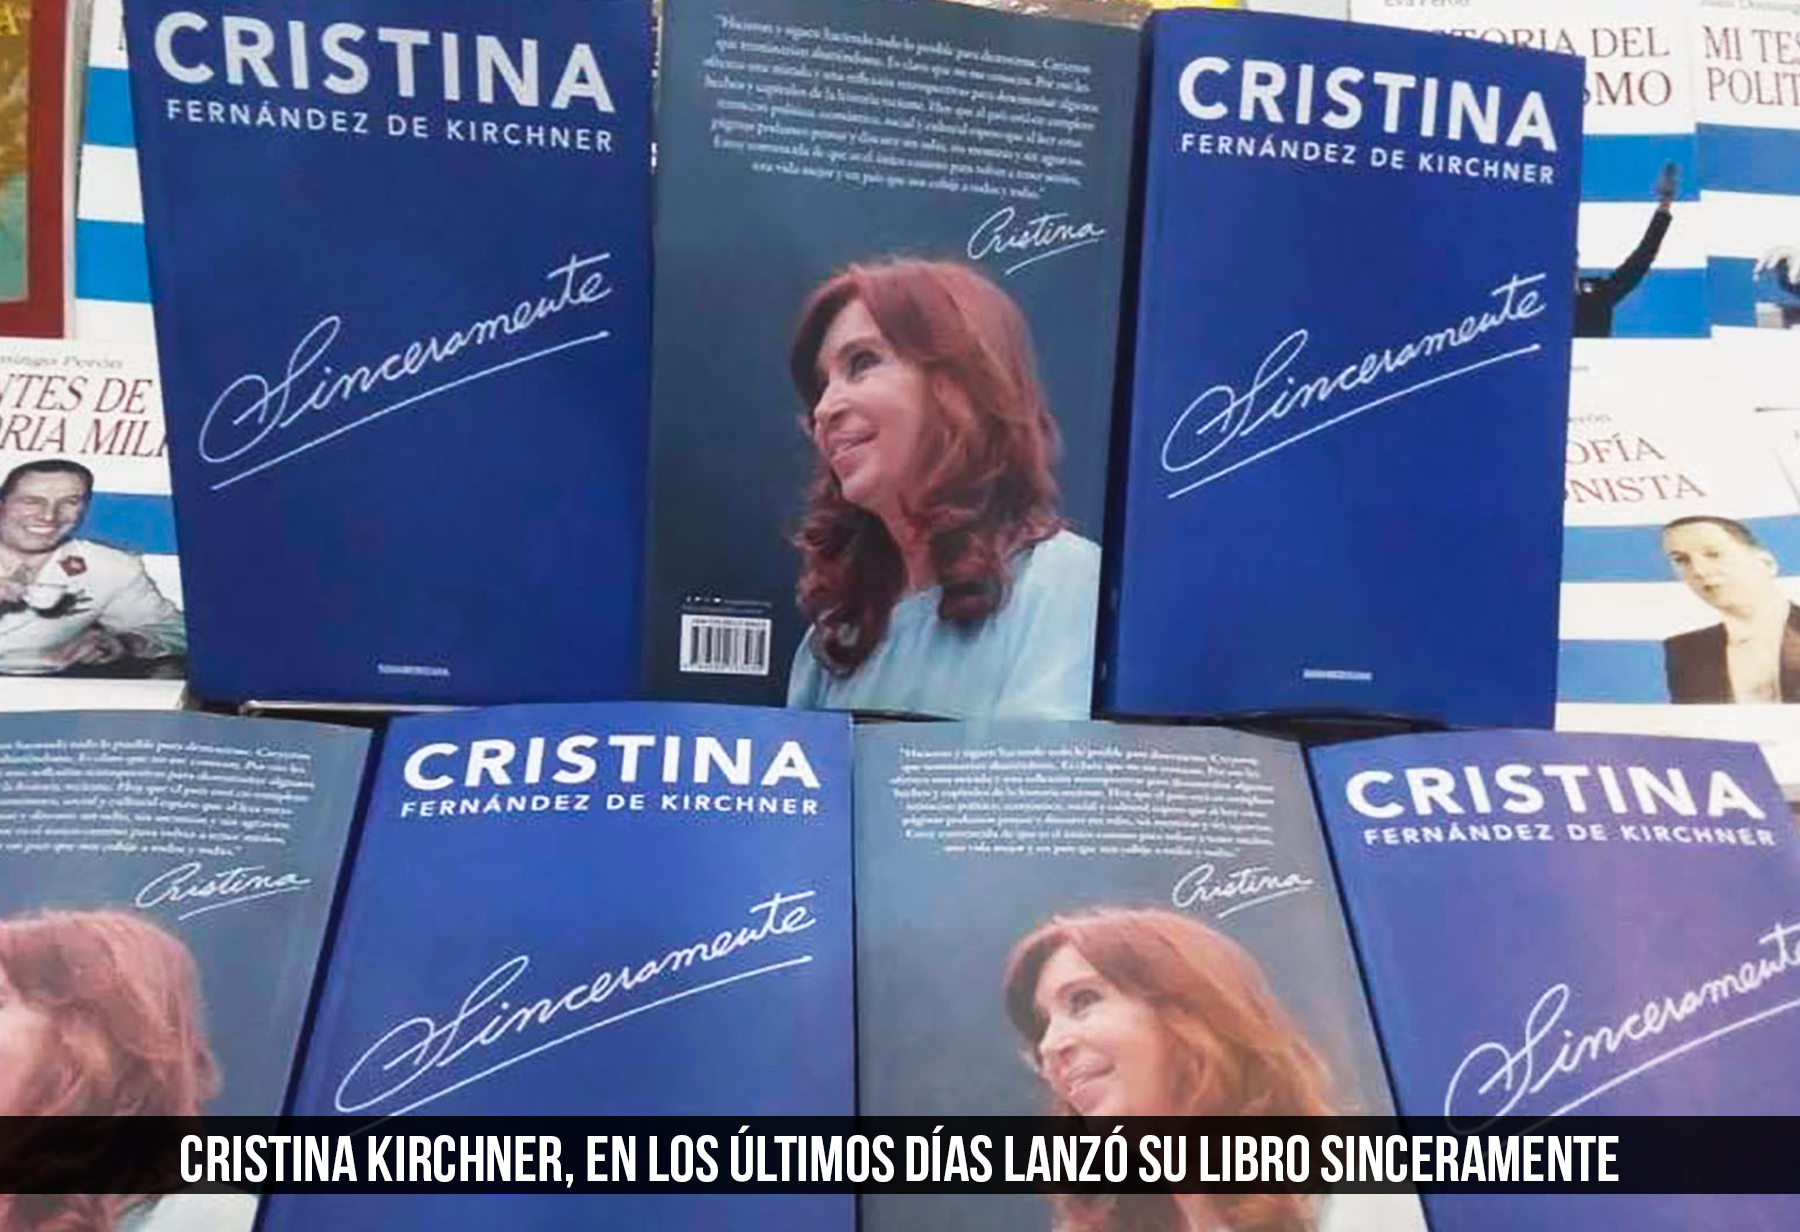 Sinceramente - Cristina Fernandez